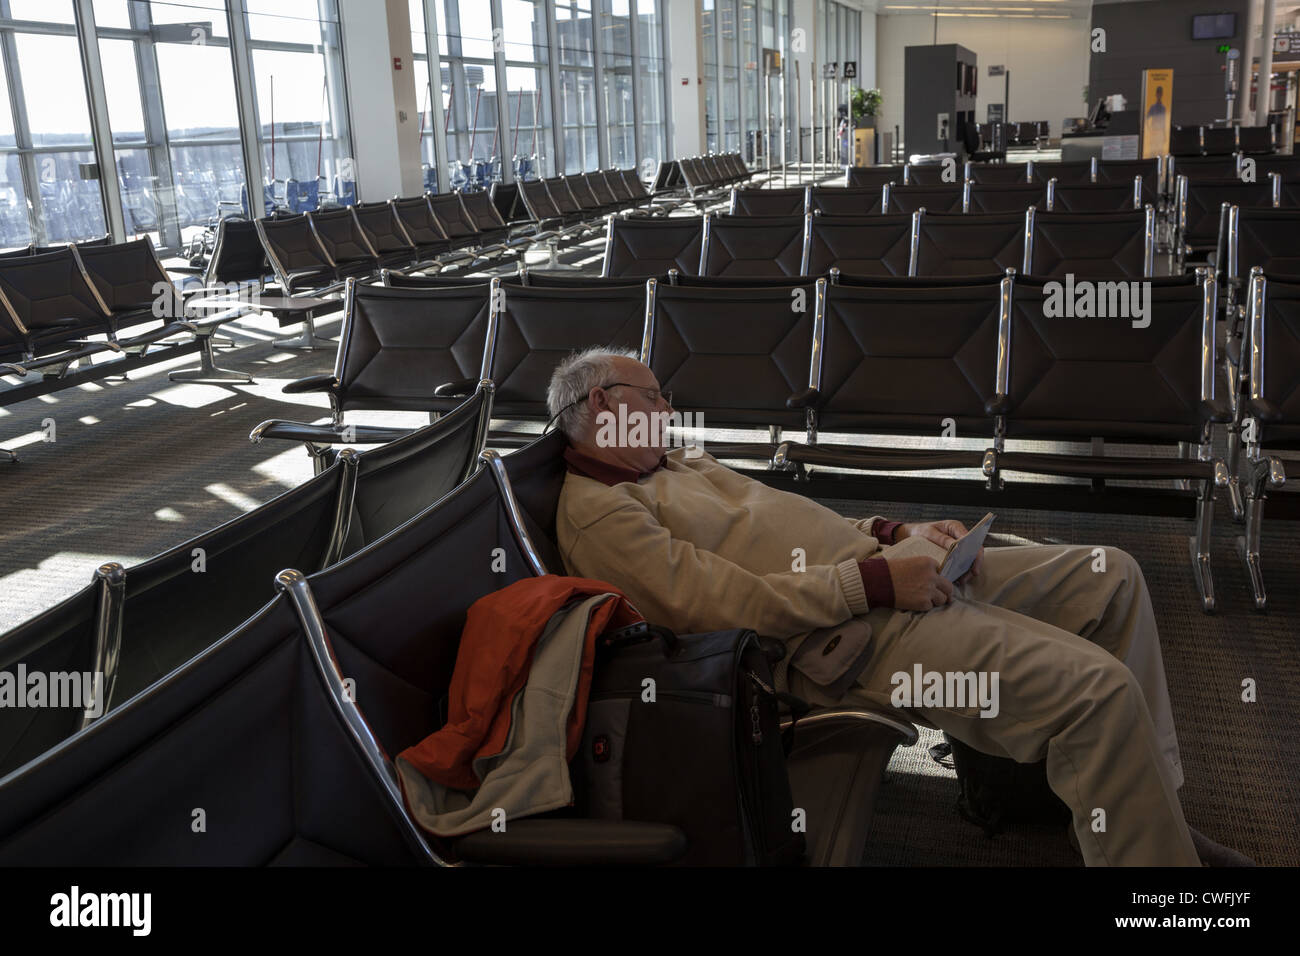 Homme endormi dans la salle vide de departure lounge à l'aéroport de Dulles, Washington DC USA Banque D'Images